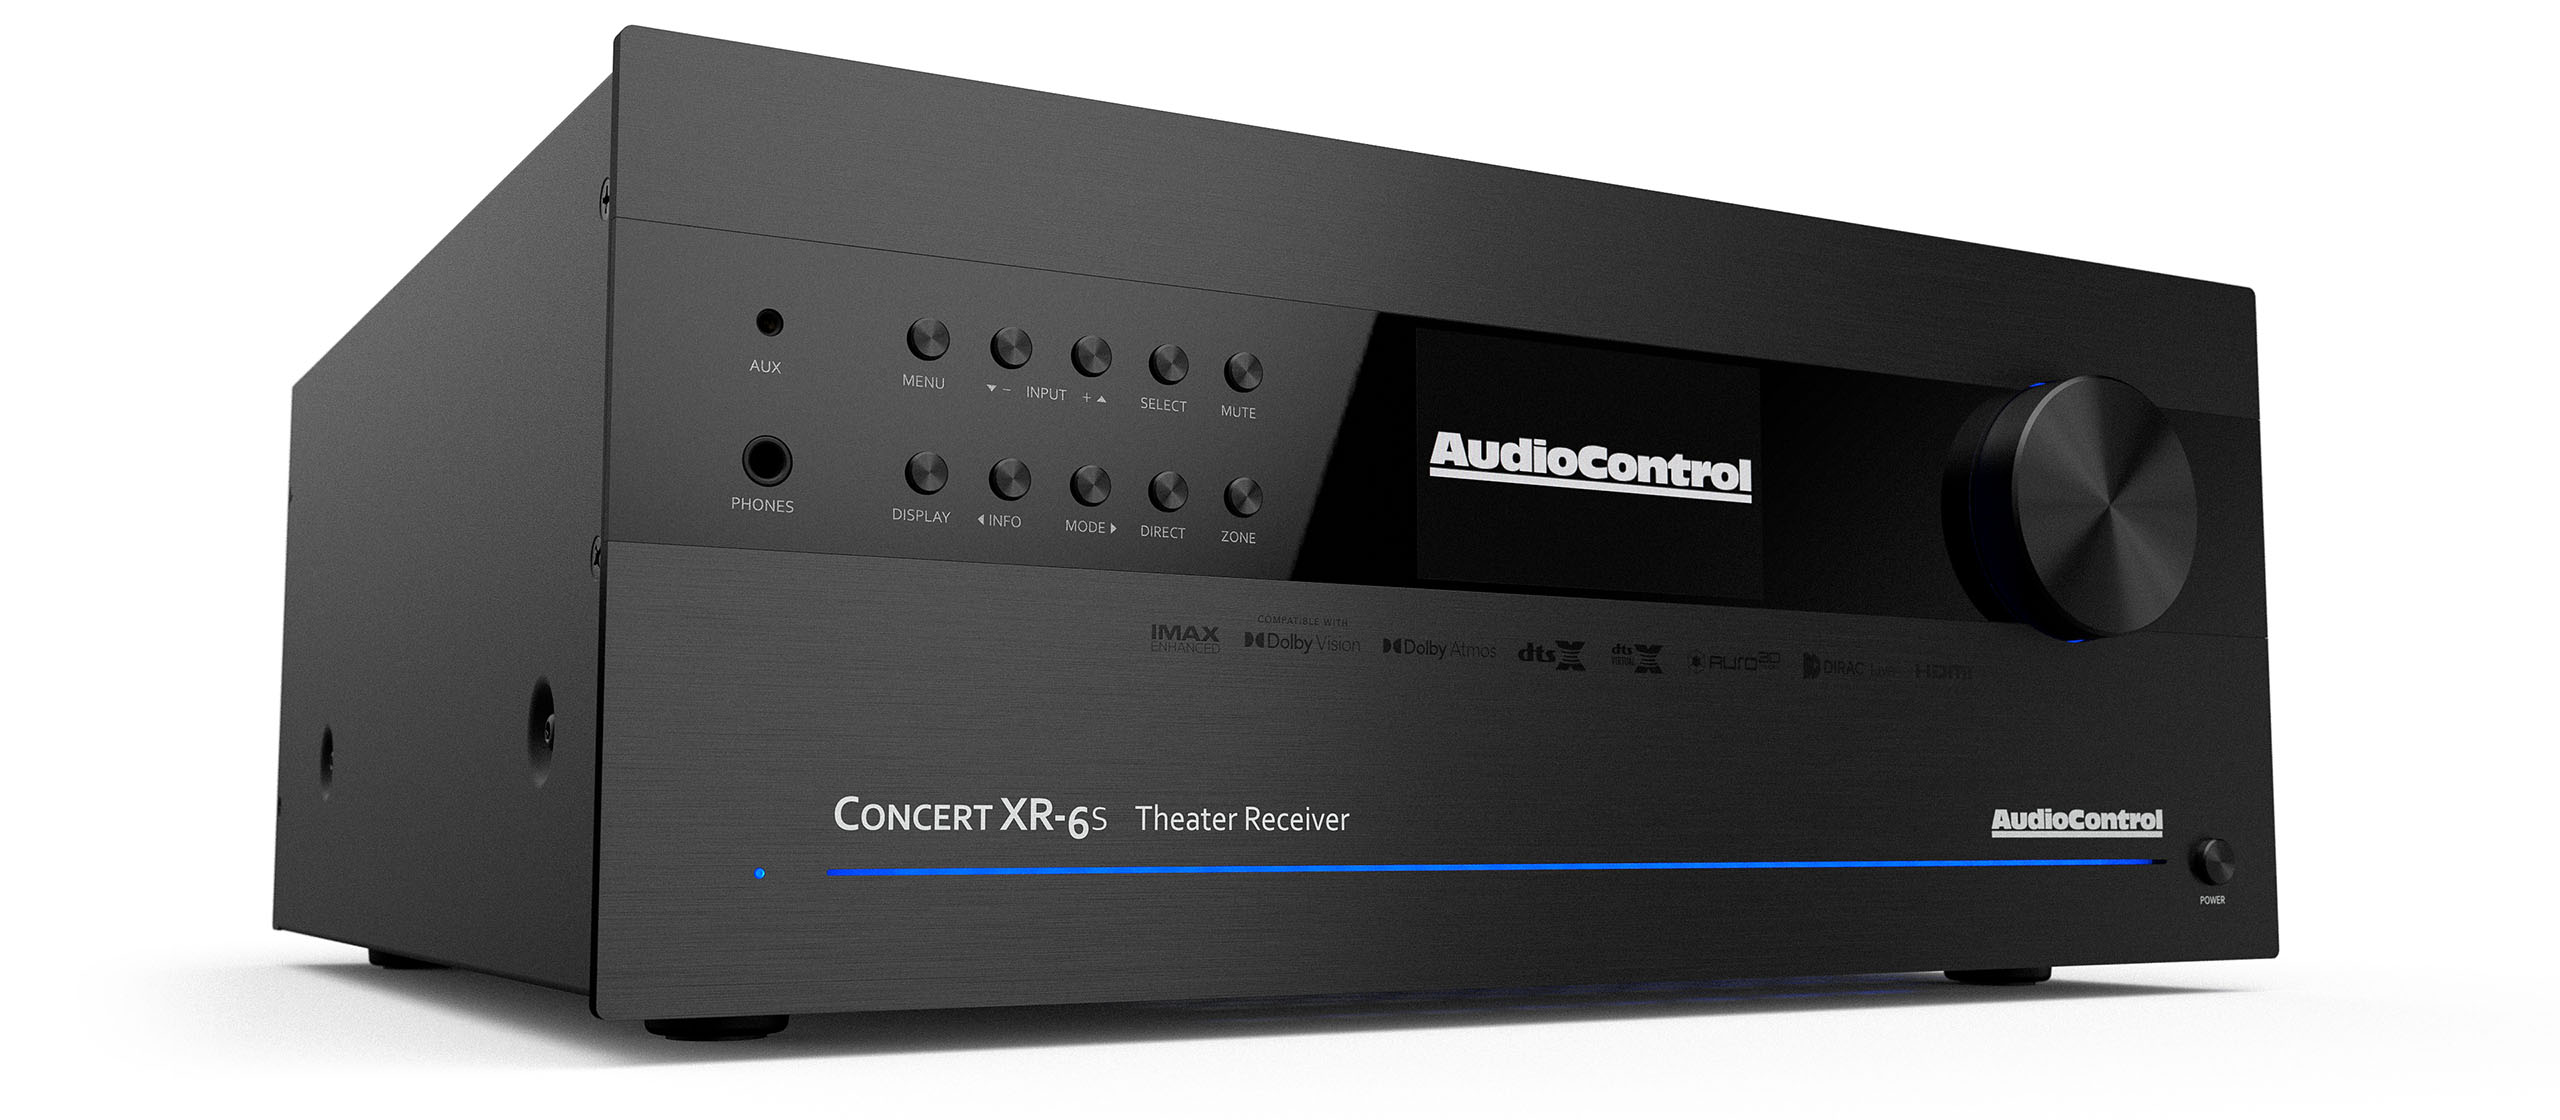 The AudioControl Concert XR-6S